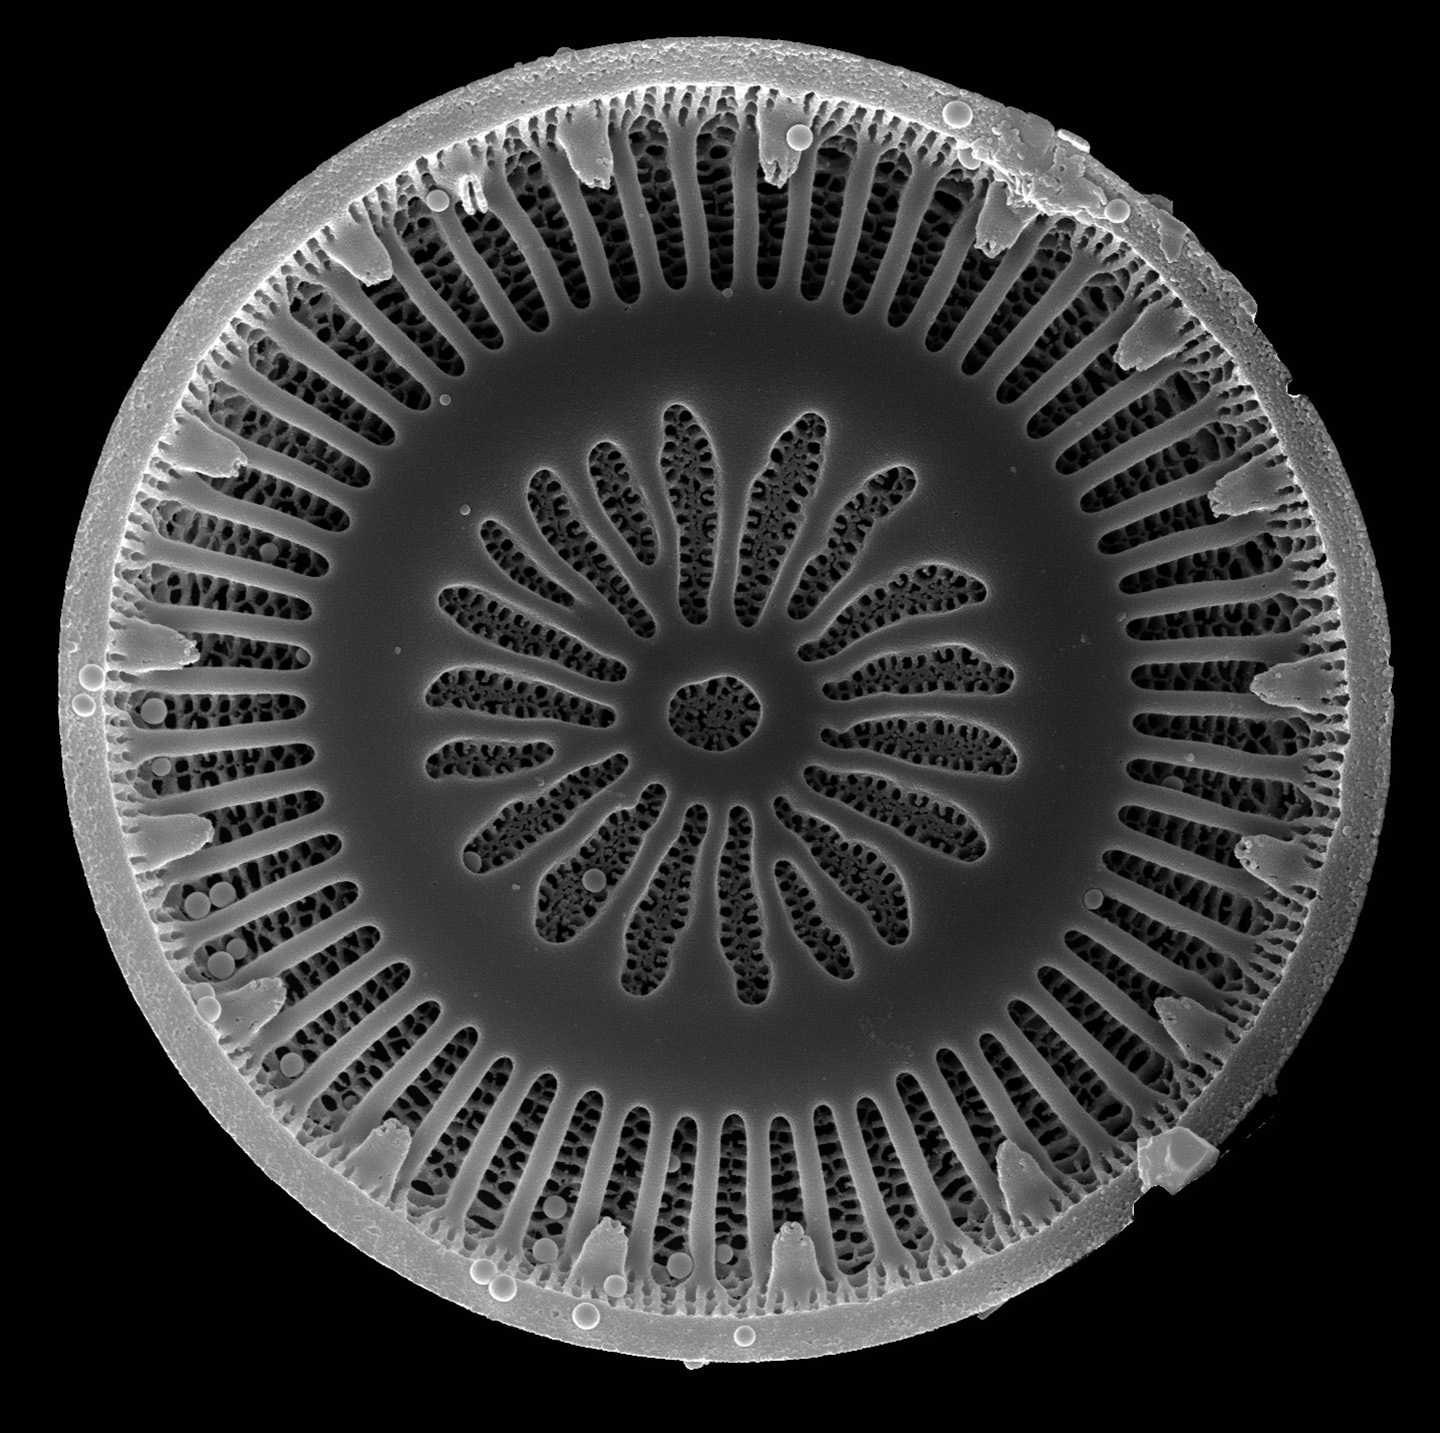 Diatomee unter Raster-Elektronenmikroskop